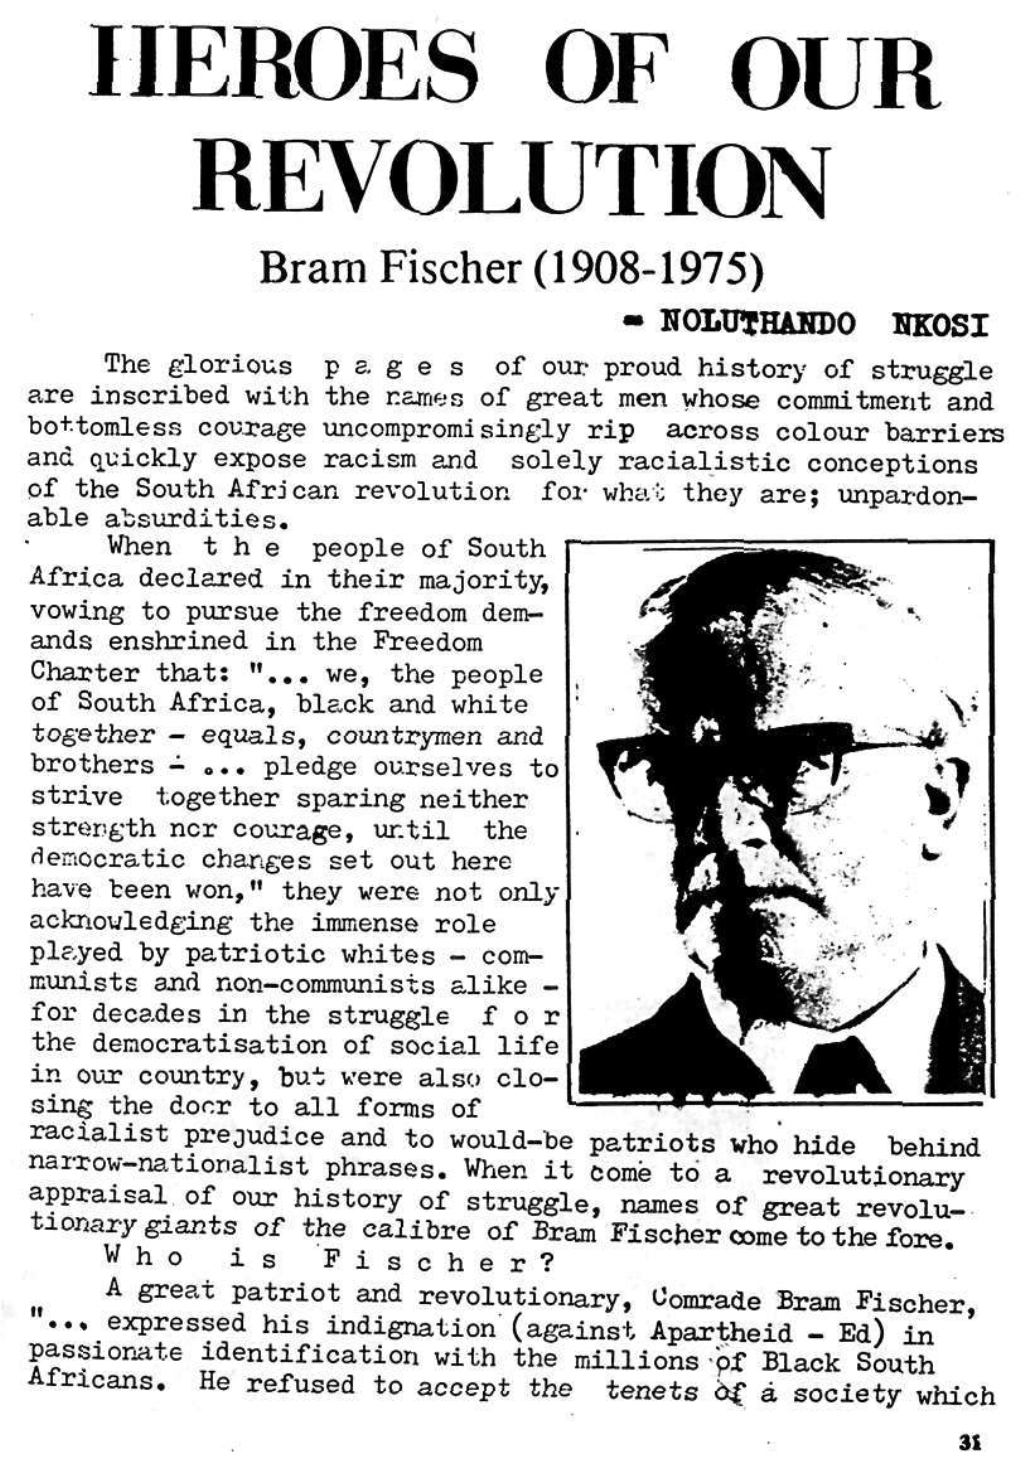 Bram Fischer (1908-1975)